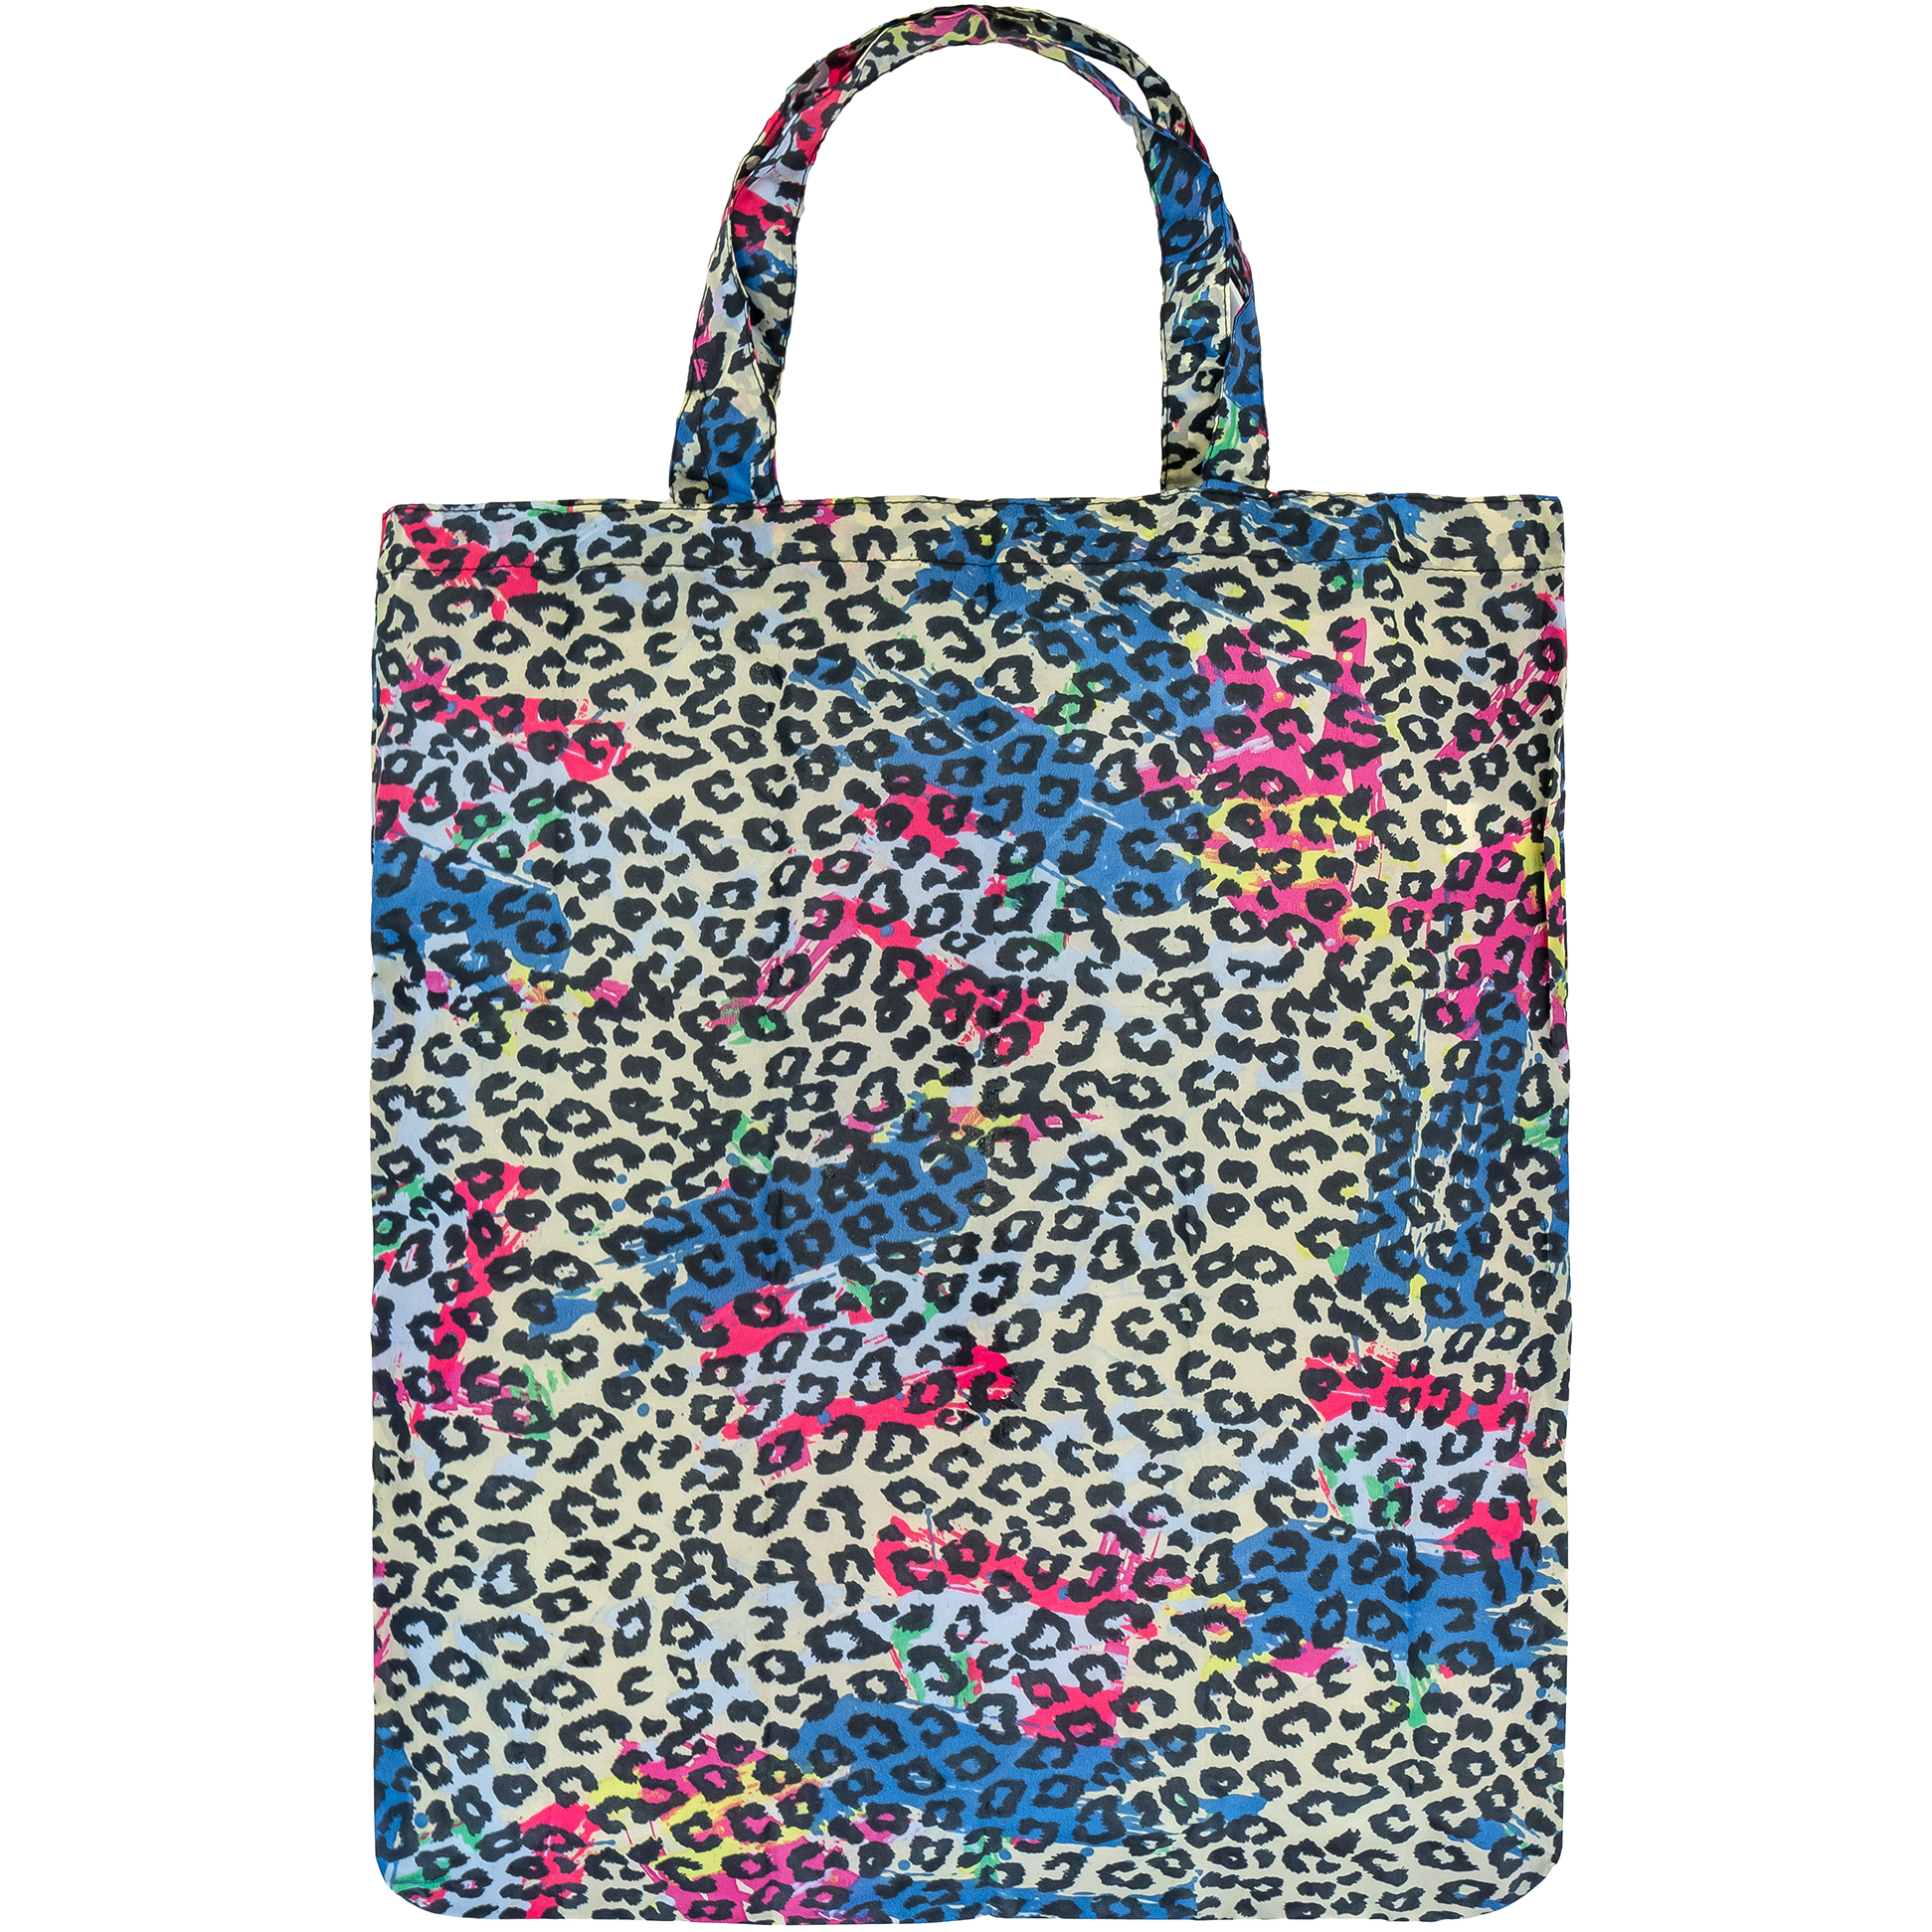 Leopard Print Re-usable bag Cb021L